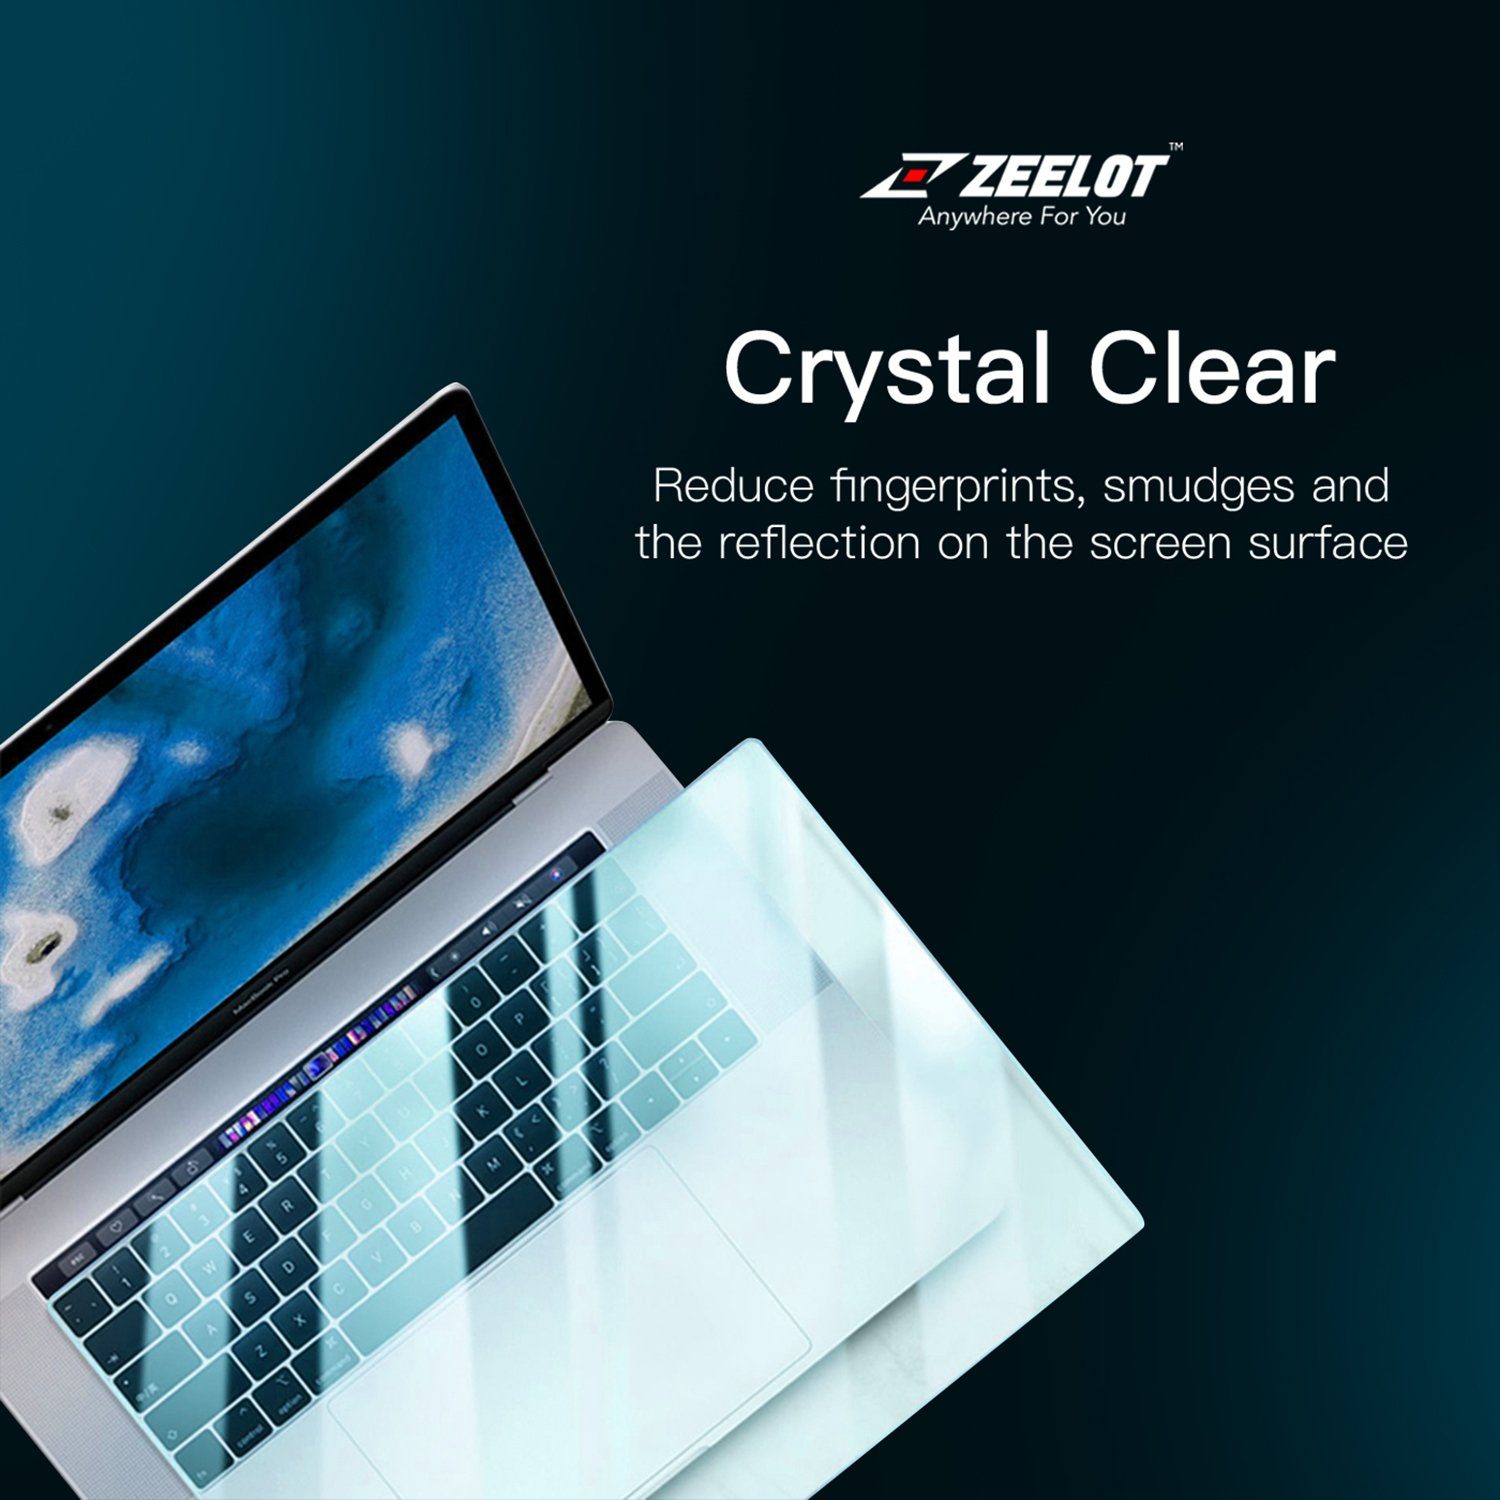 ZEELOT PureShield Crystal Film Screen Protector for Macbook Pro 16" Default Zeelot 